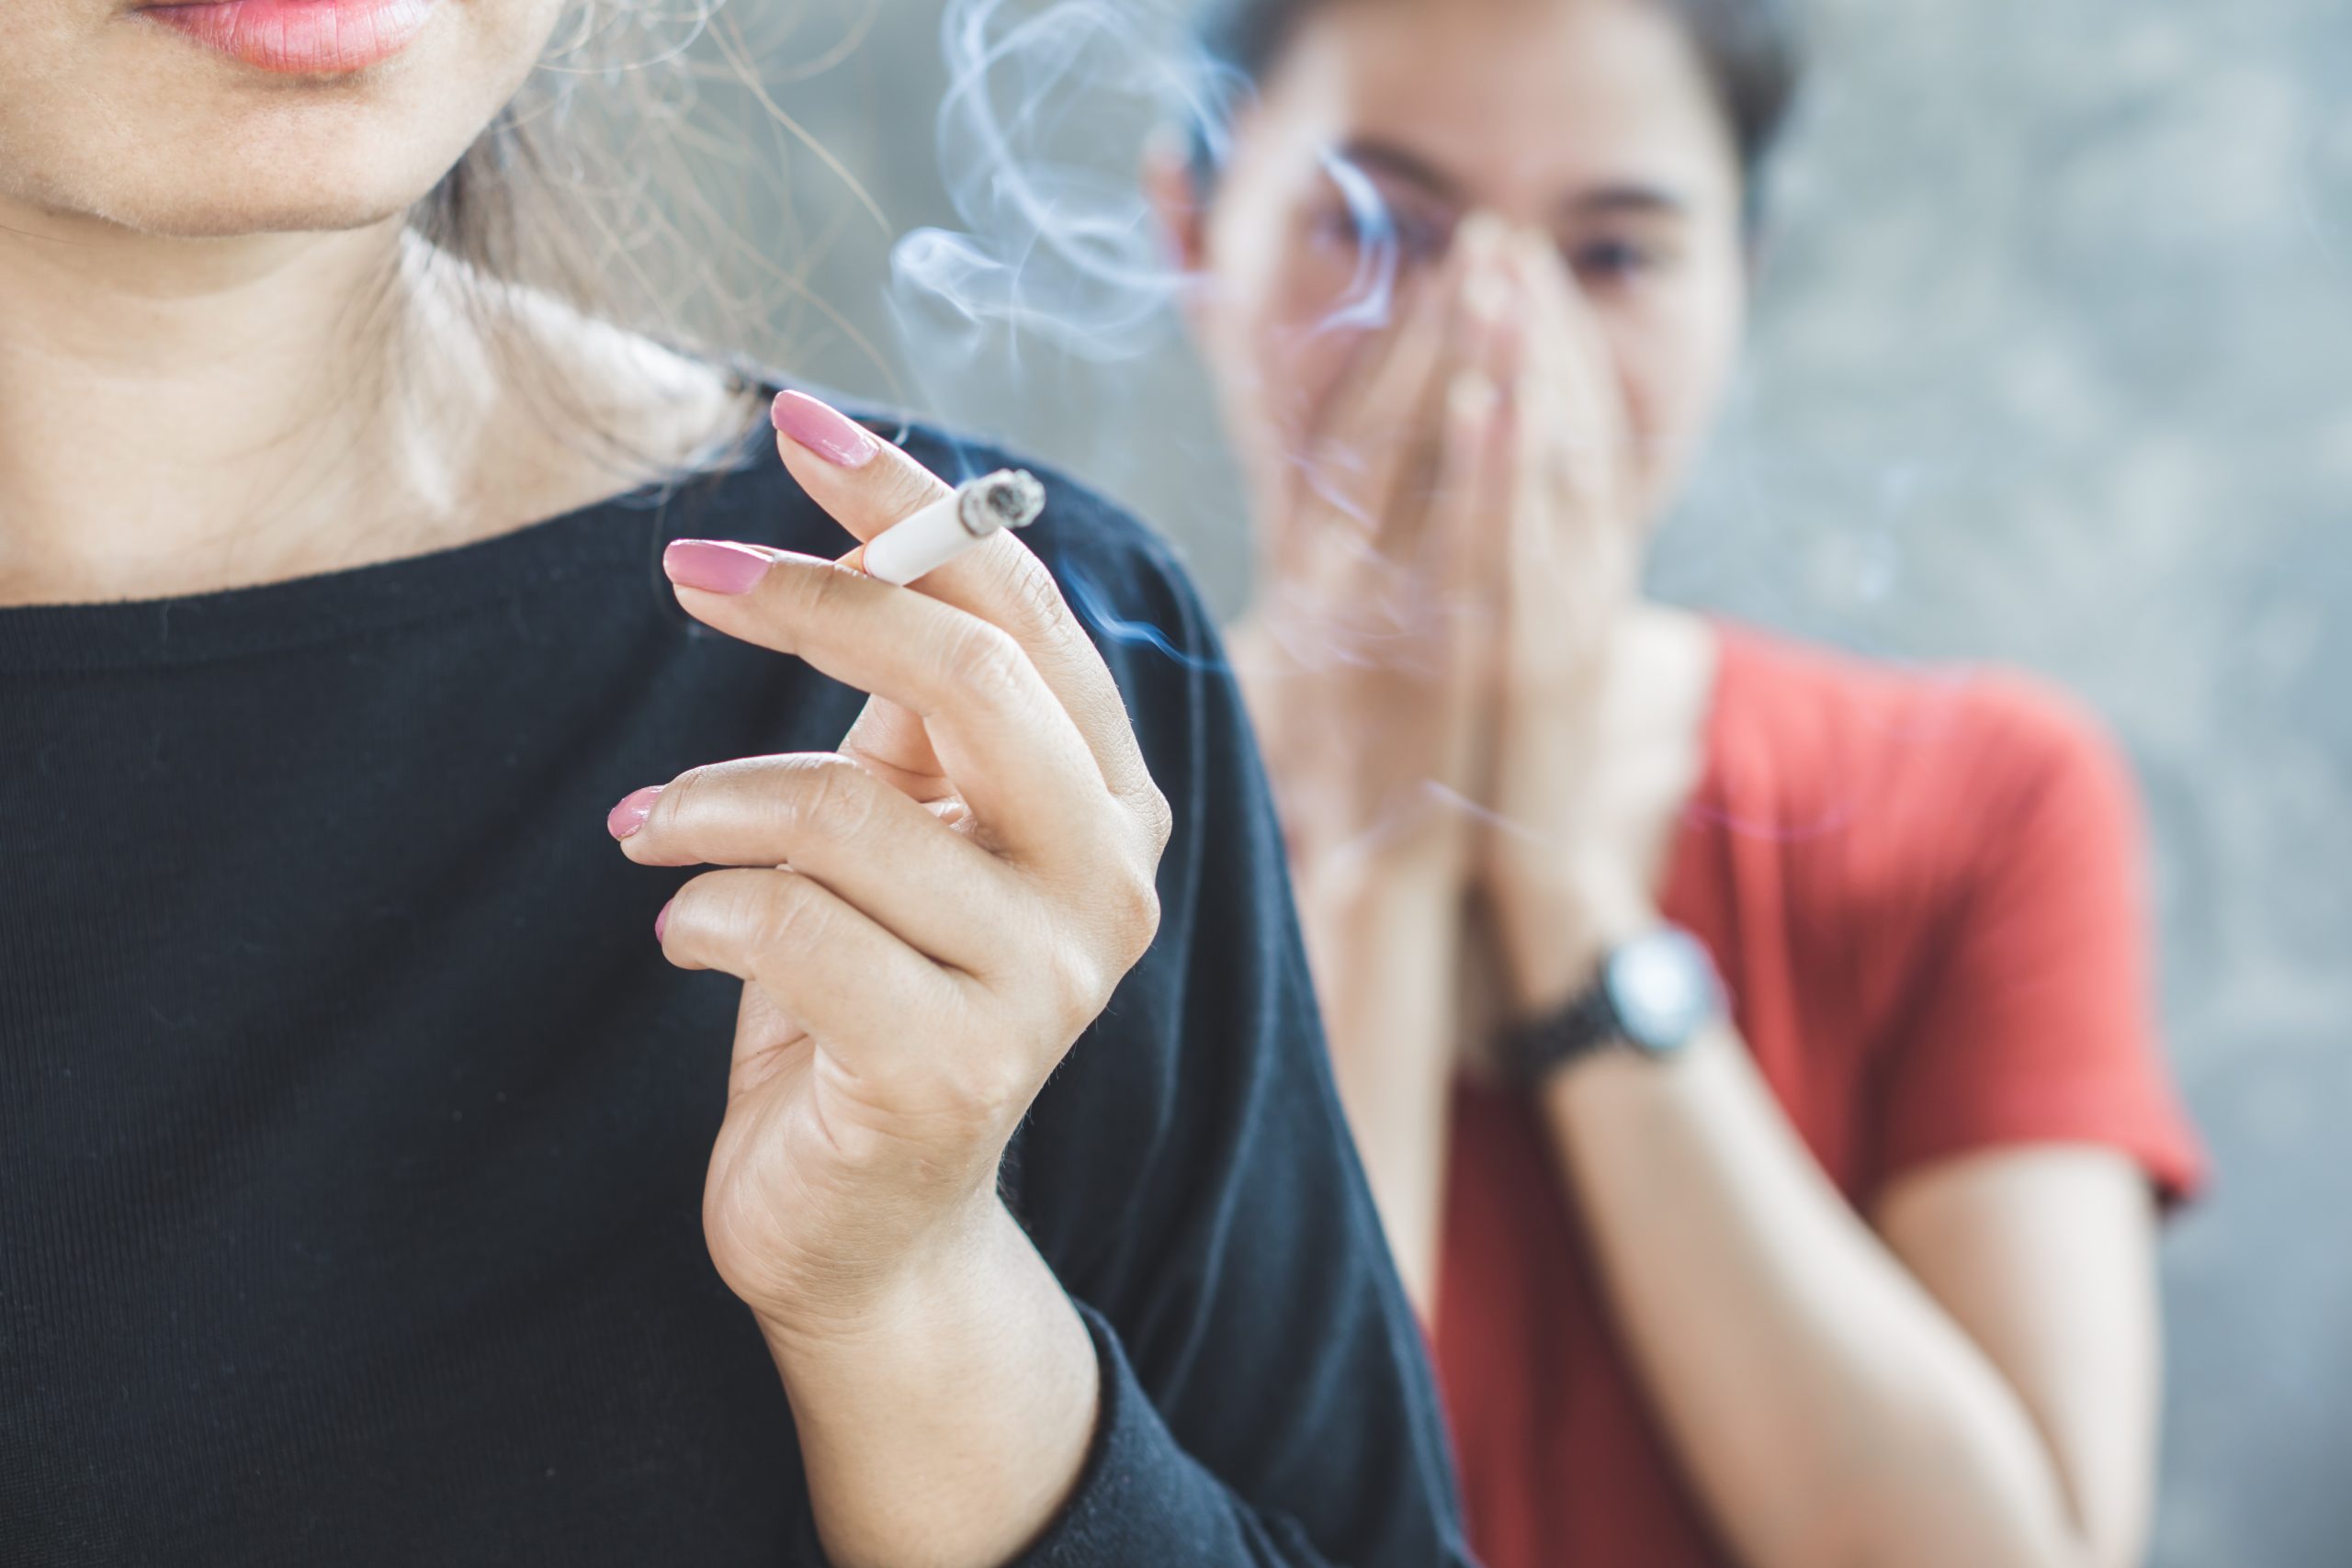 Na imagem uma mulher com blusa preta está segurando um cigarro. Ao fundo, uma mulher de blusa vermelha está tampando o nariz, por conta do cheiro de cigarro